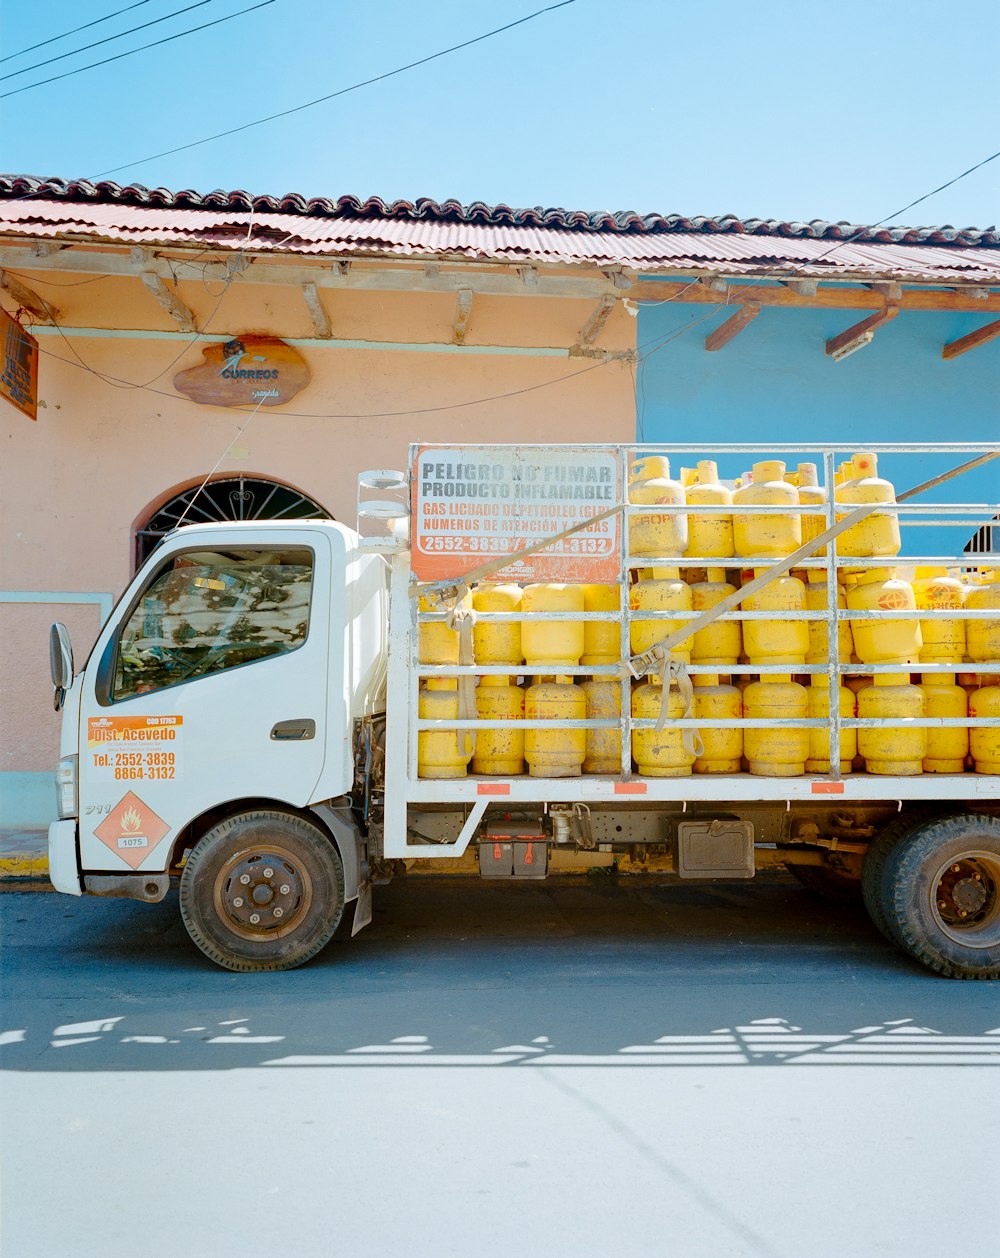 Un camion con molti contenitori gialli sul retro